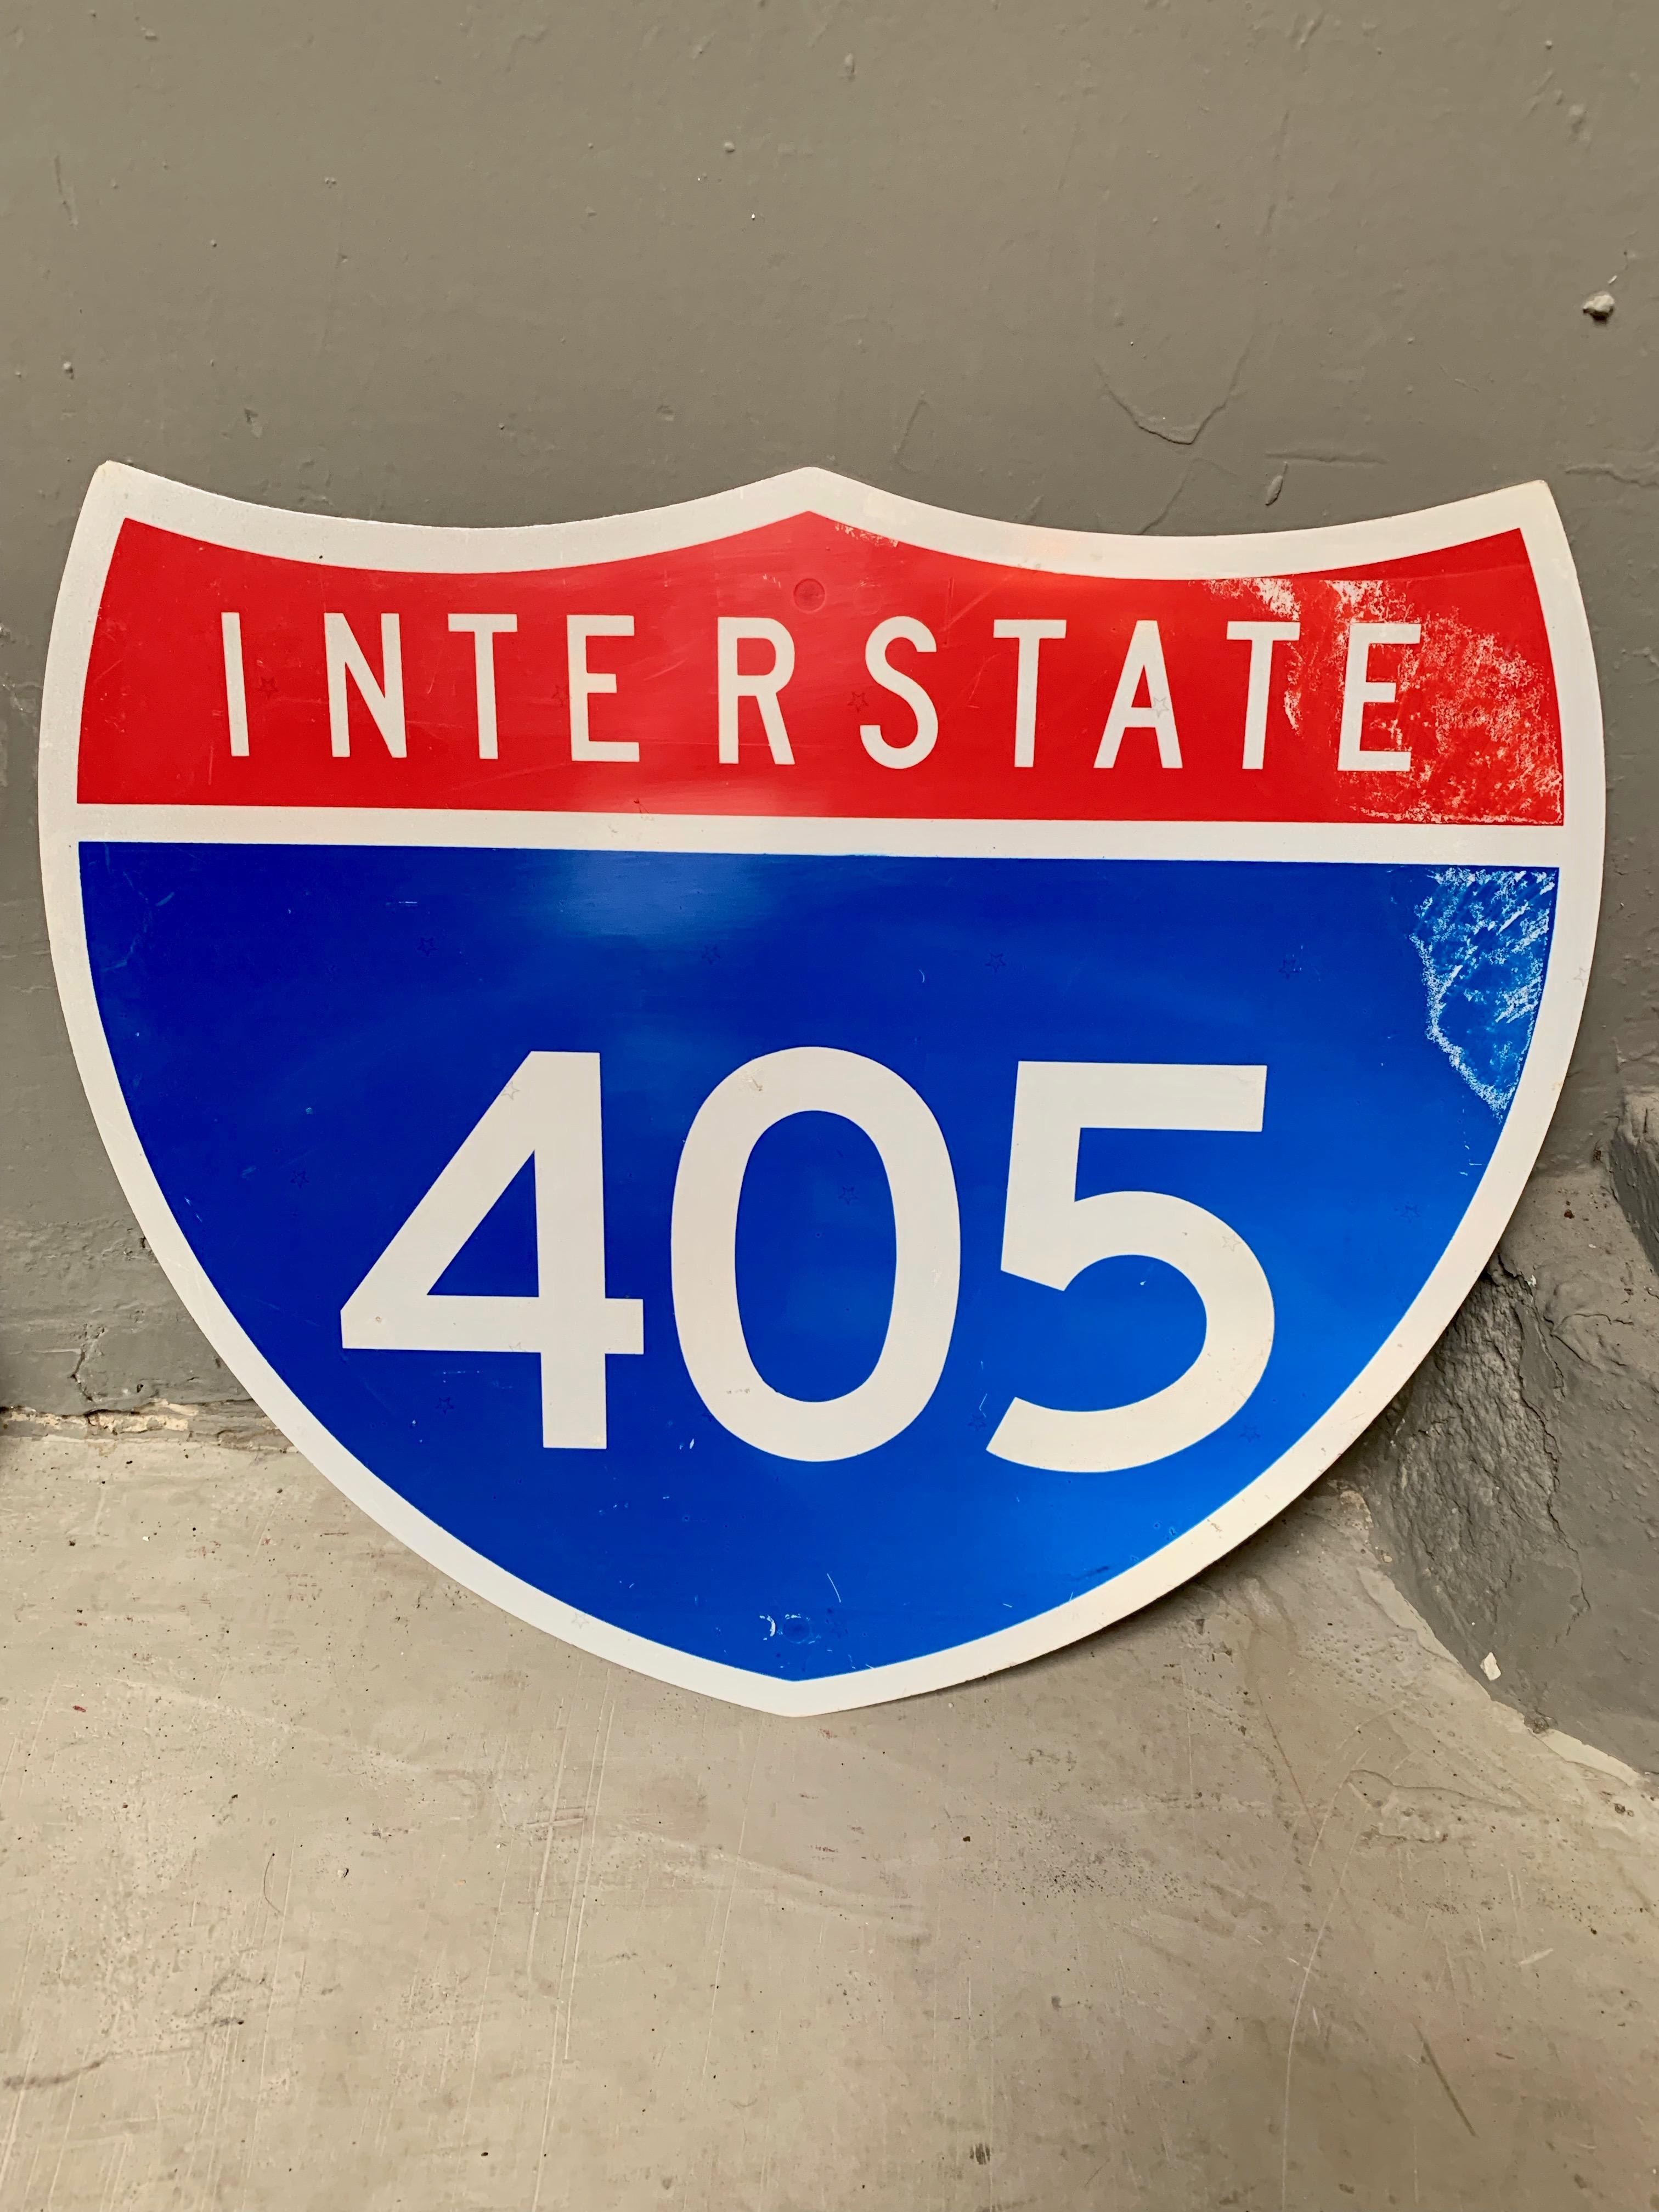 Schild der Autobahn Interstate 405. Cooles Stück kalifornischer Beschilderung. Guter alter Zustand. Das Metallschild ist mit kleinen Sternen bedruckt.